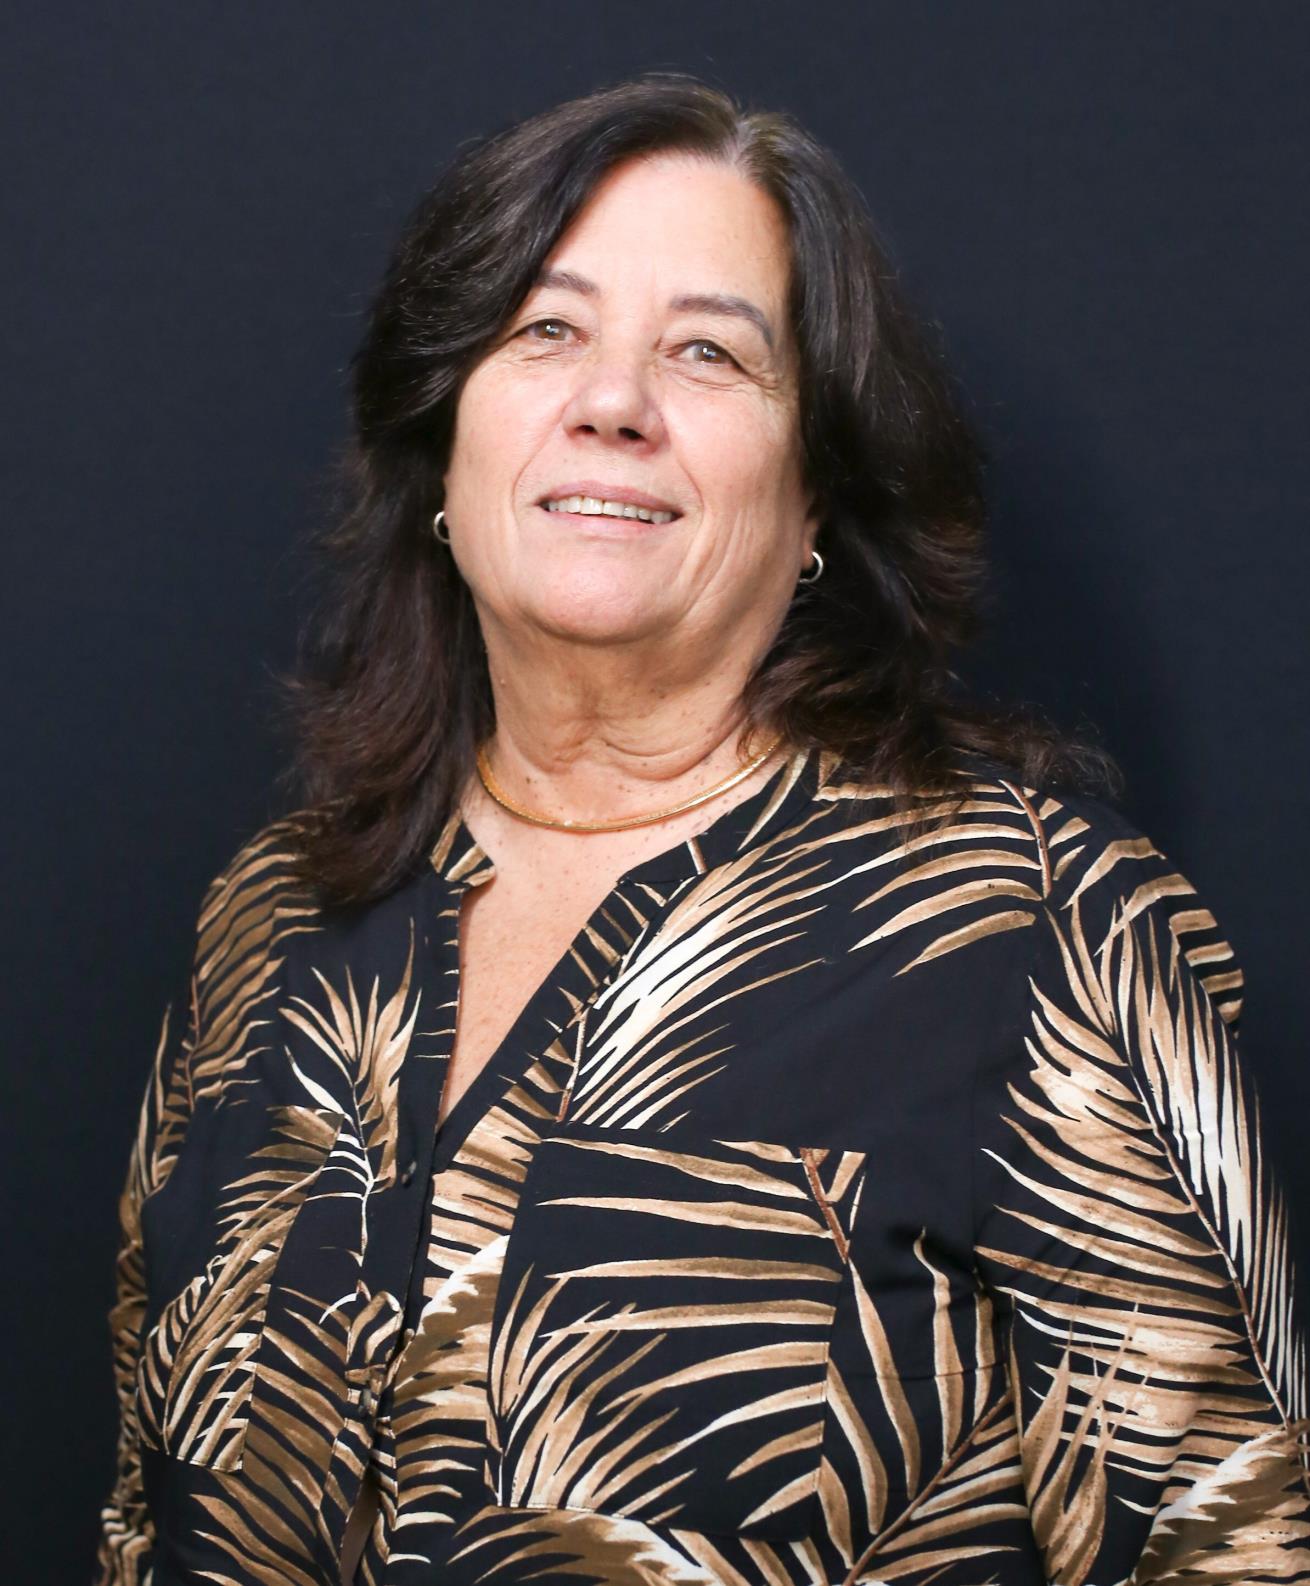 Maria Marlene Gazonato